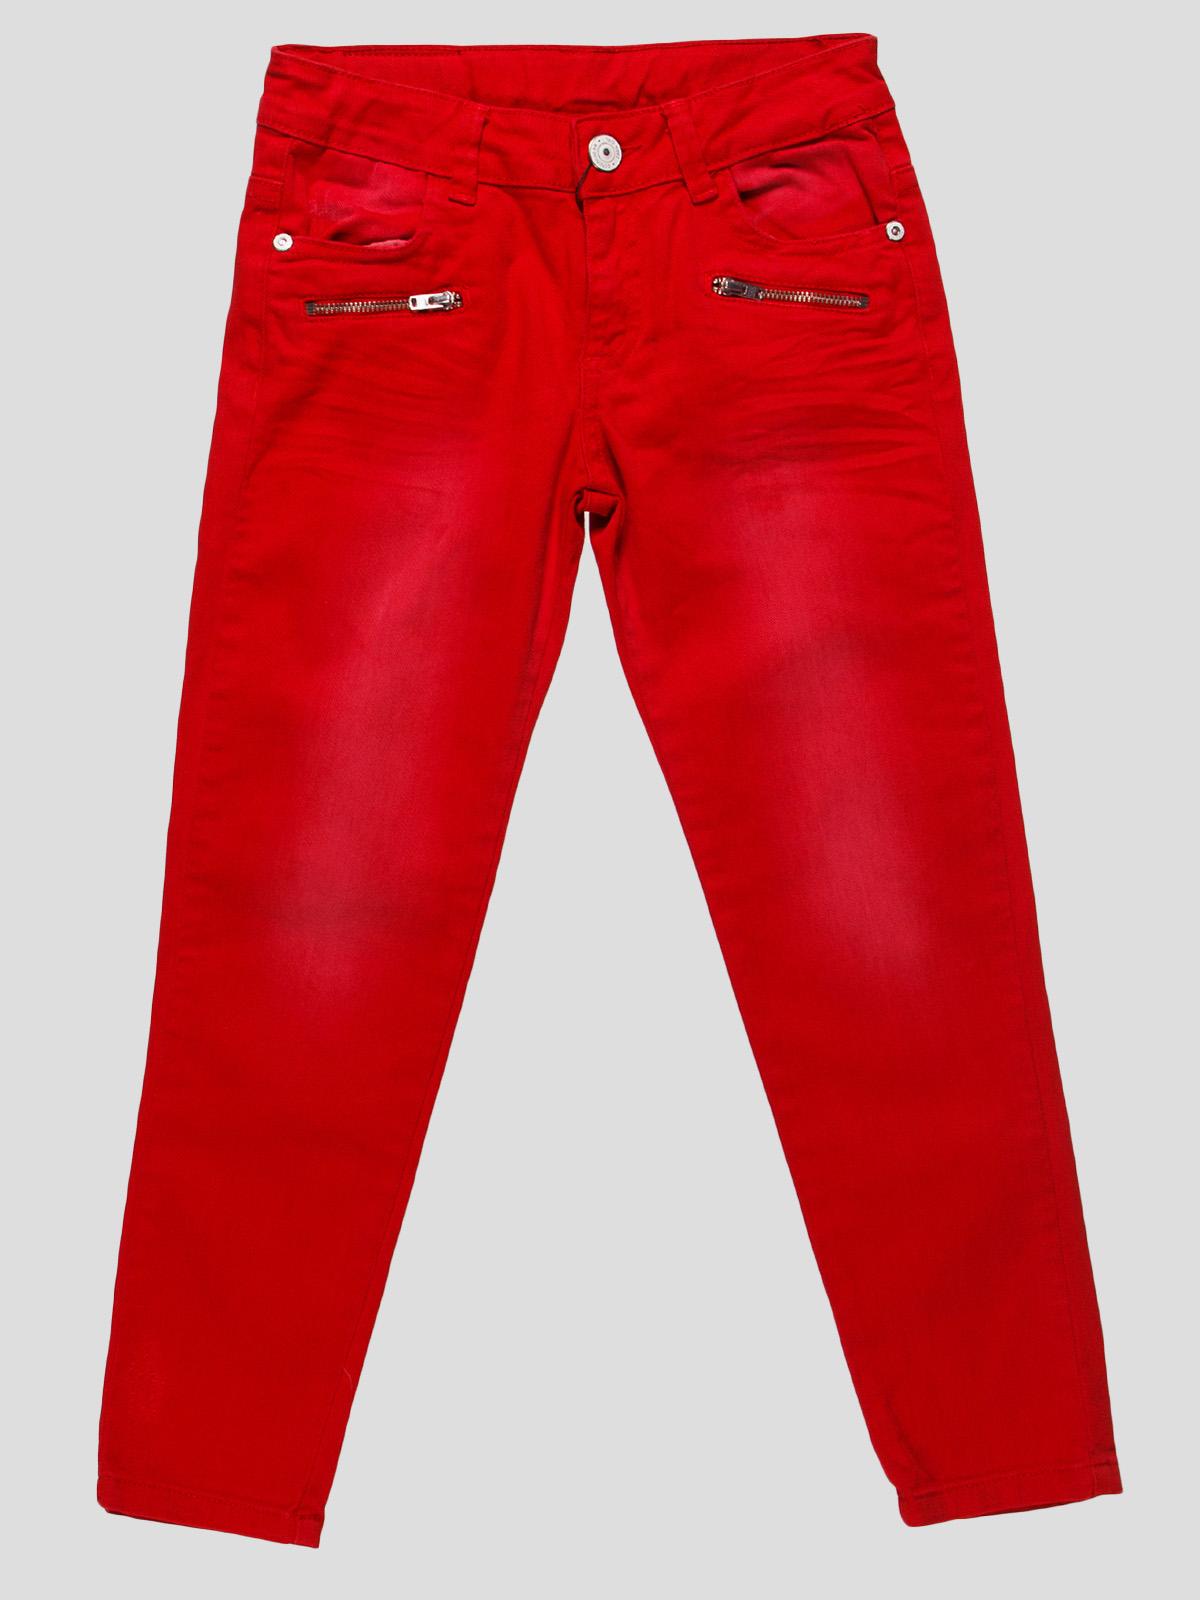 Красные джинсы